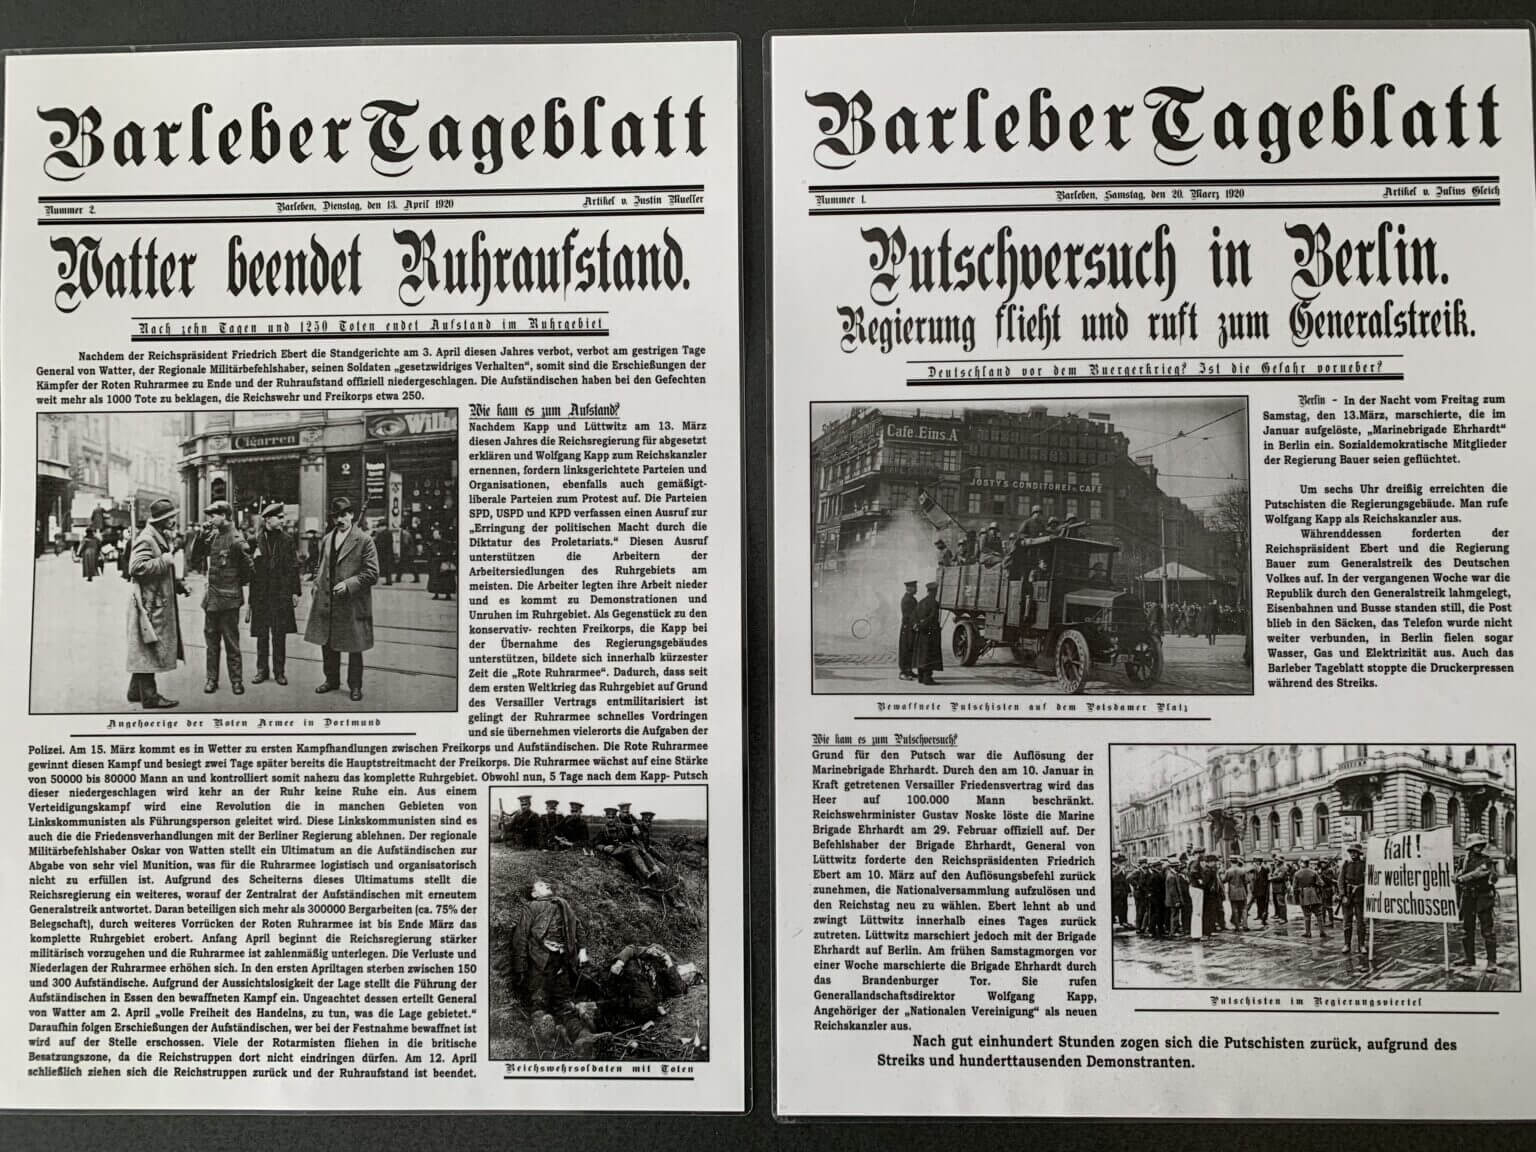 Fachschaft Geschichte Barleber Tagesblatt 1 1536x1152 1